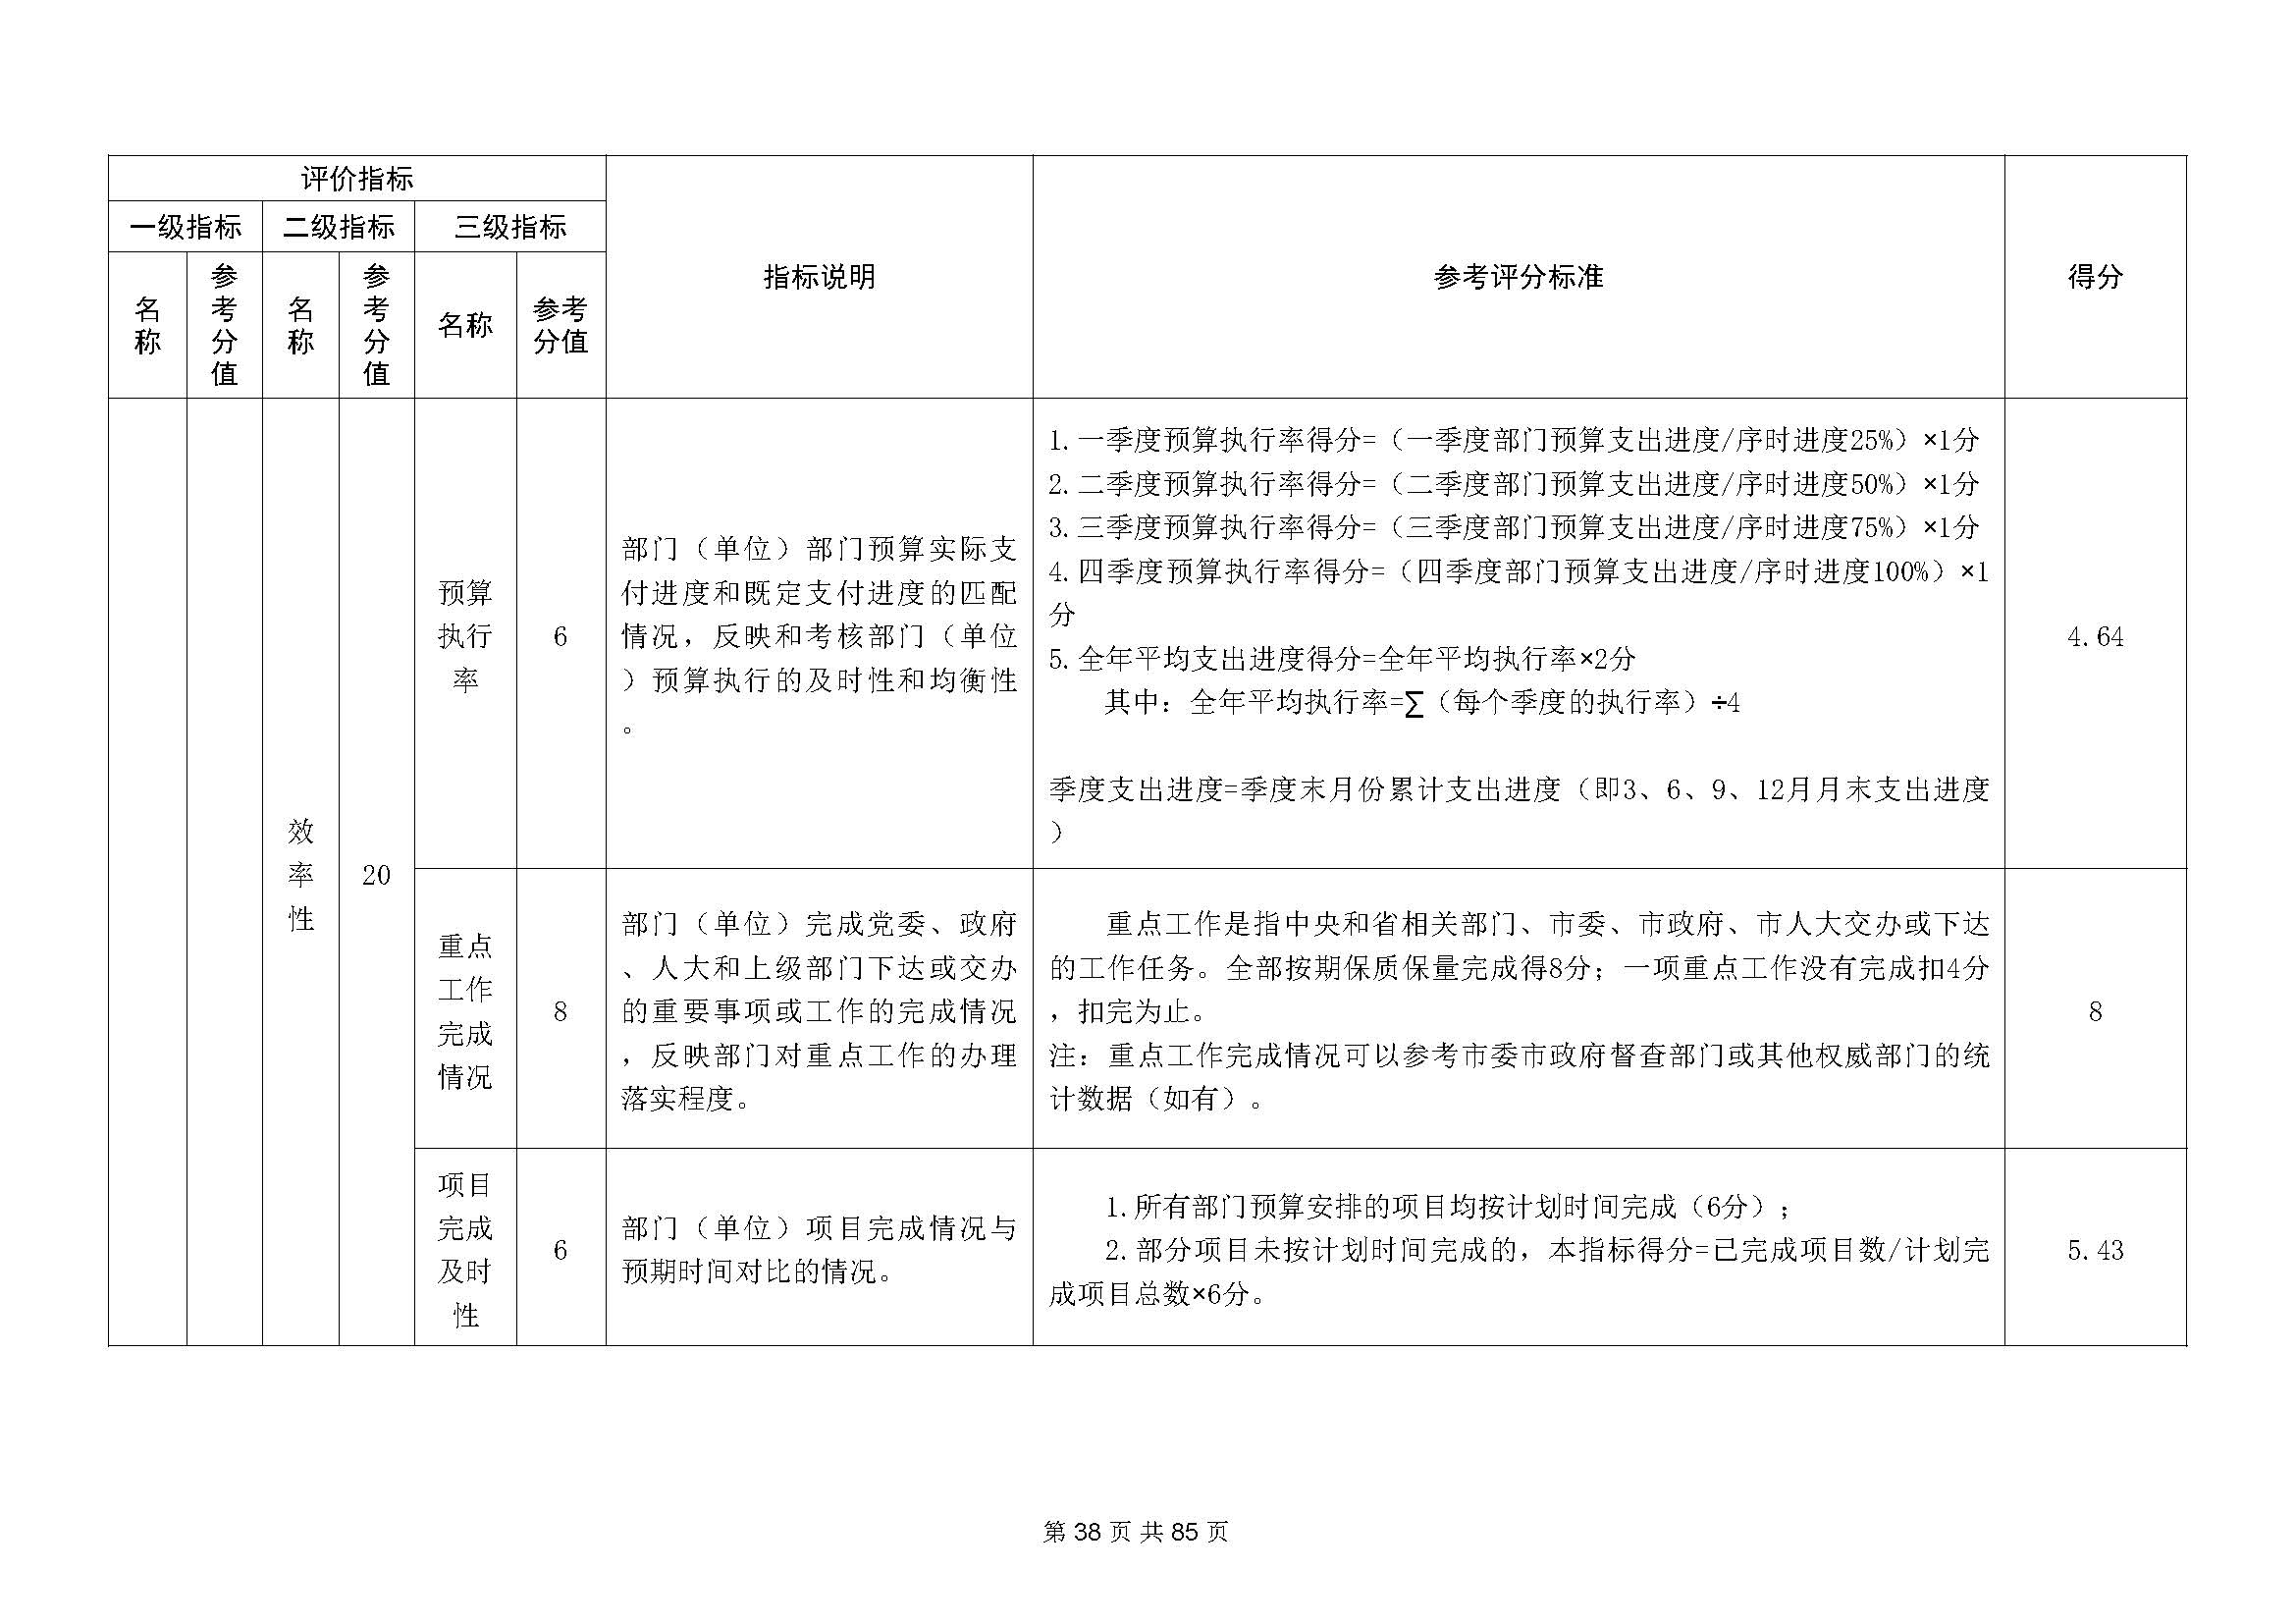 深圳市招生考试办公室2020年度部门决算_页面_39.jpg